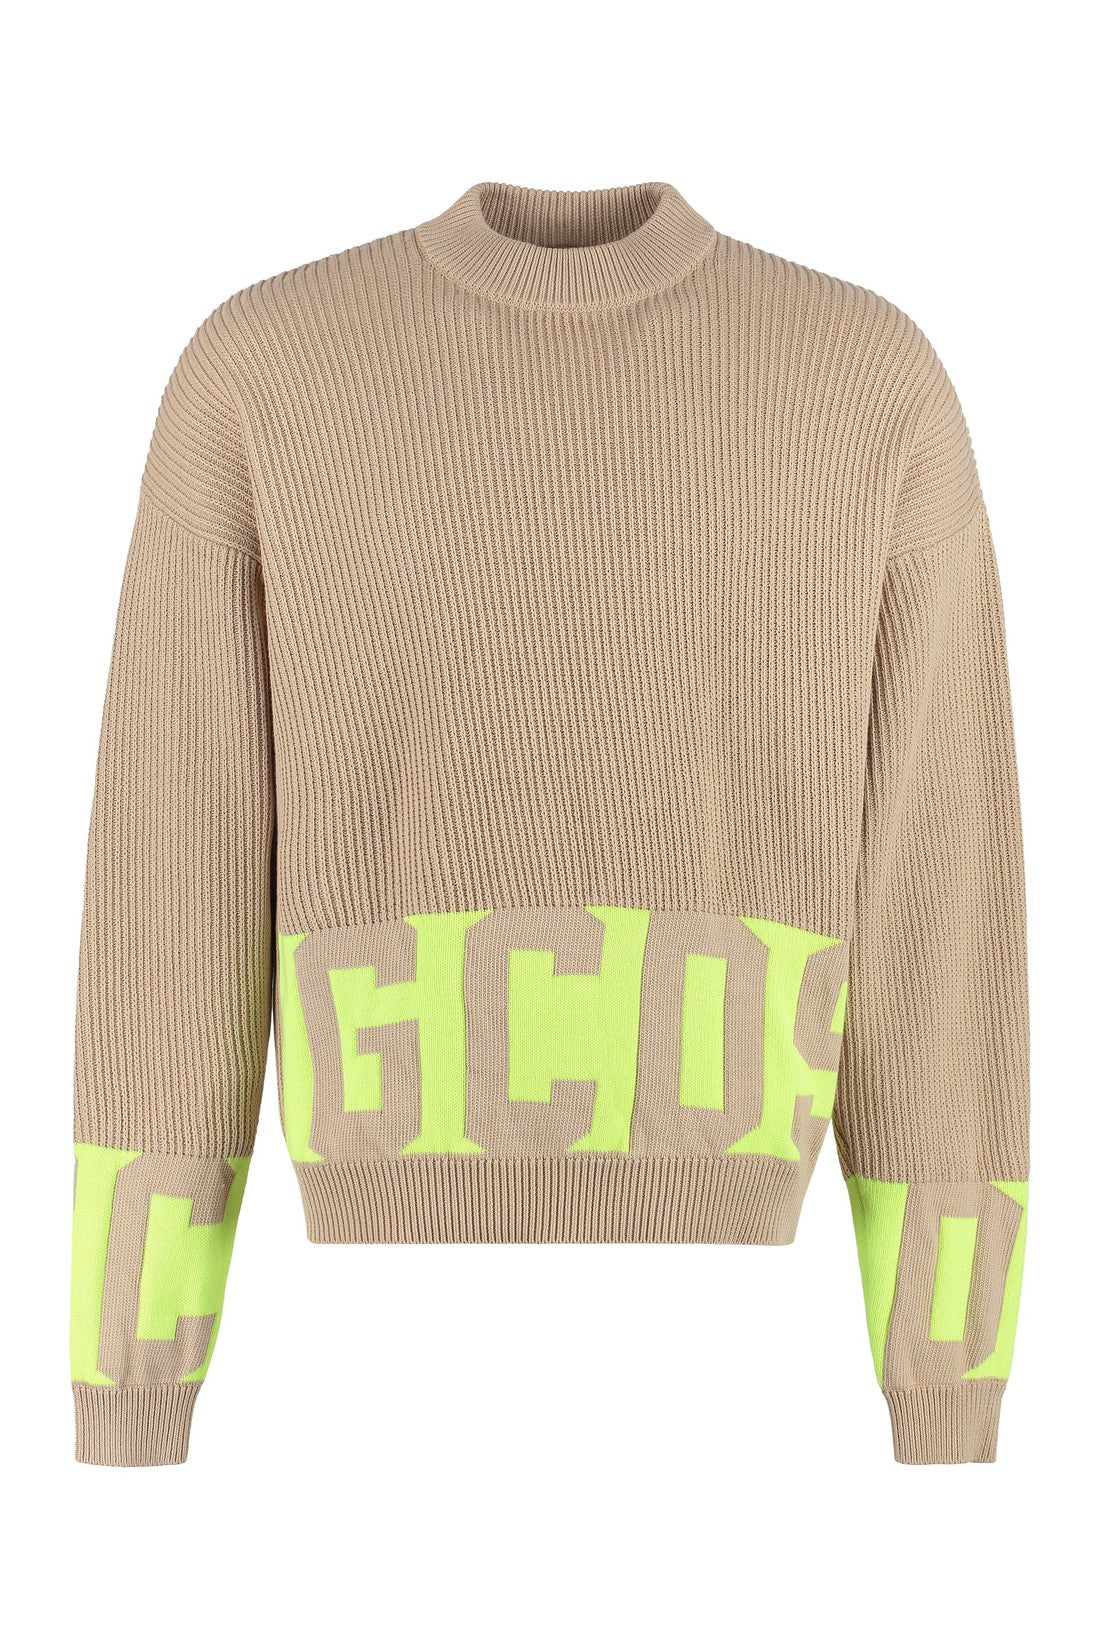 GCDS-OUTLET-SALE-Cotton crew-neck sweater-ARCHIVIST